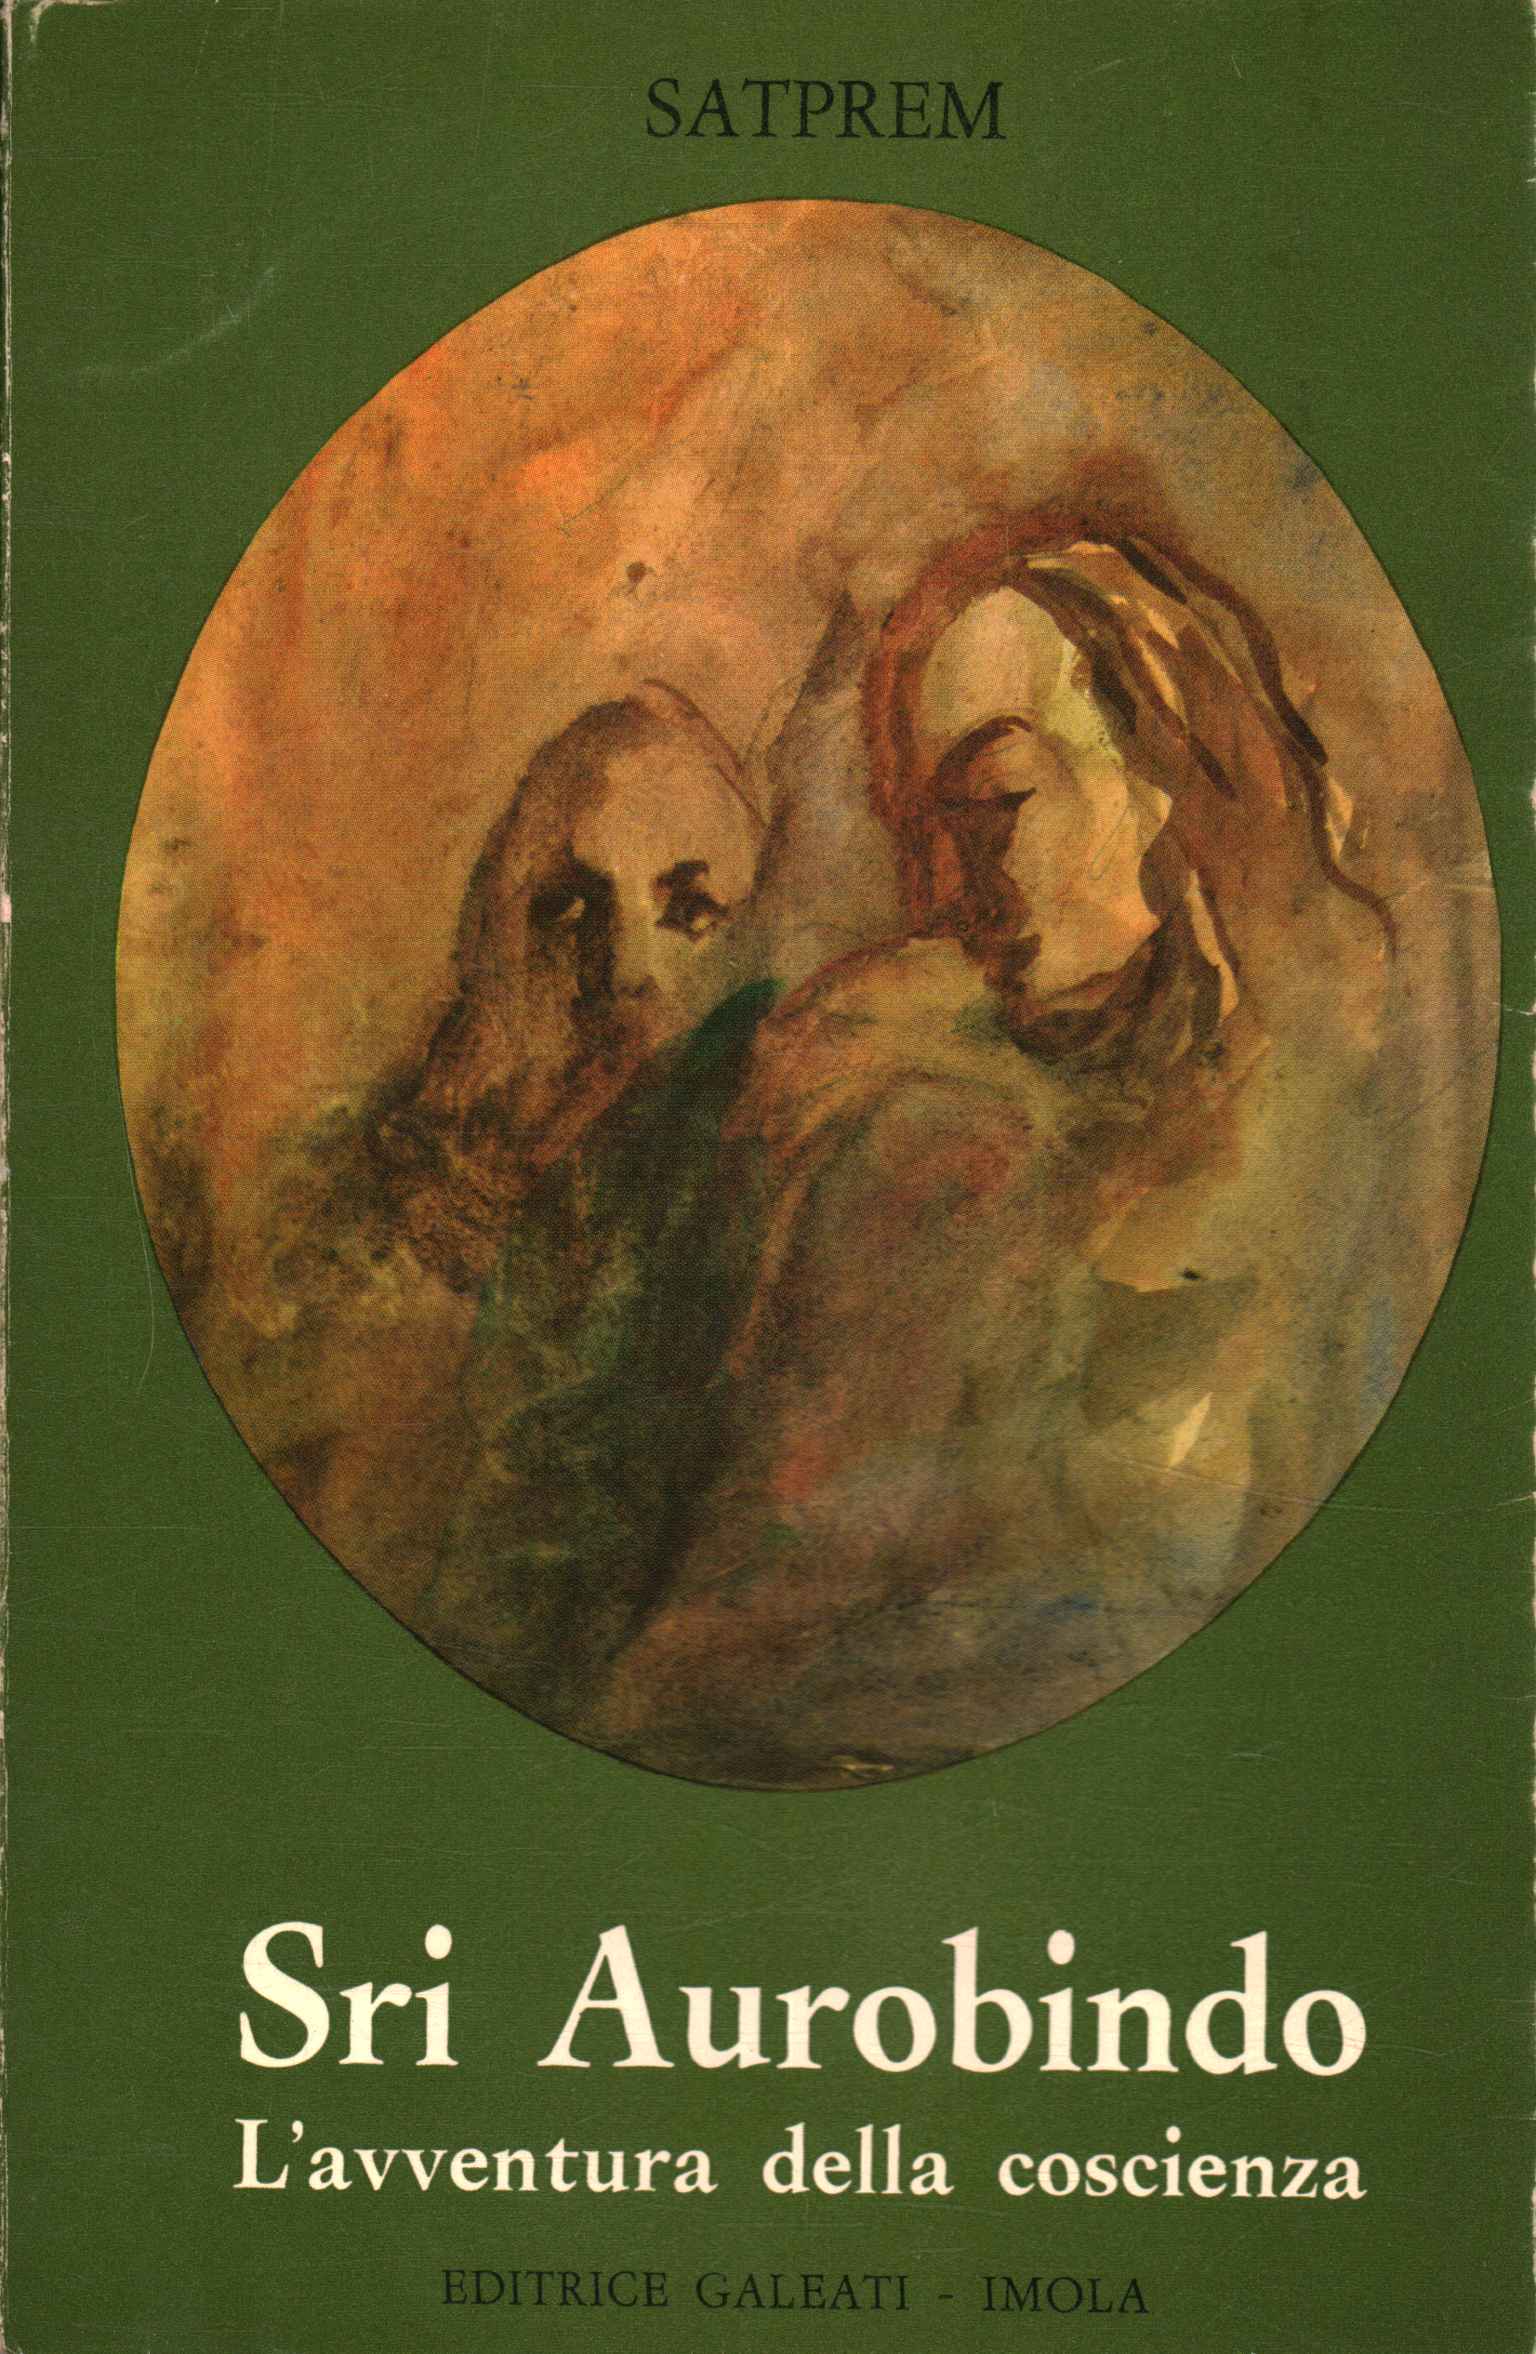 Sri Aurobindo o l'avventura della coscienza - Satprem (Galeati Editrice) [1968]